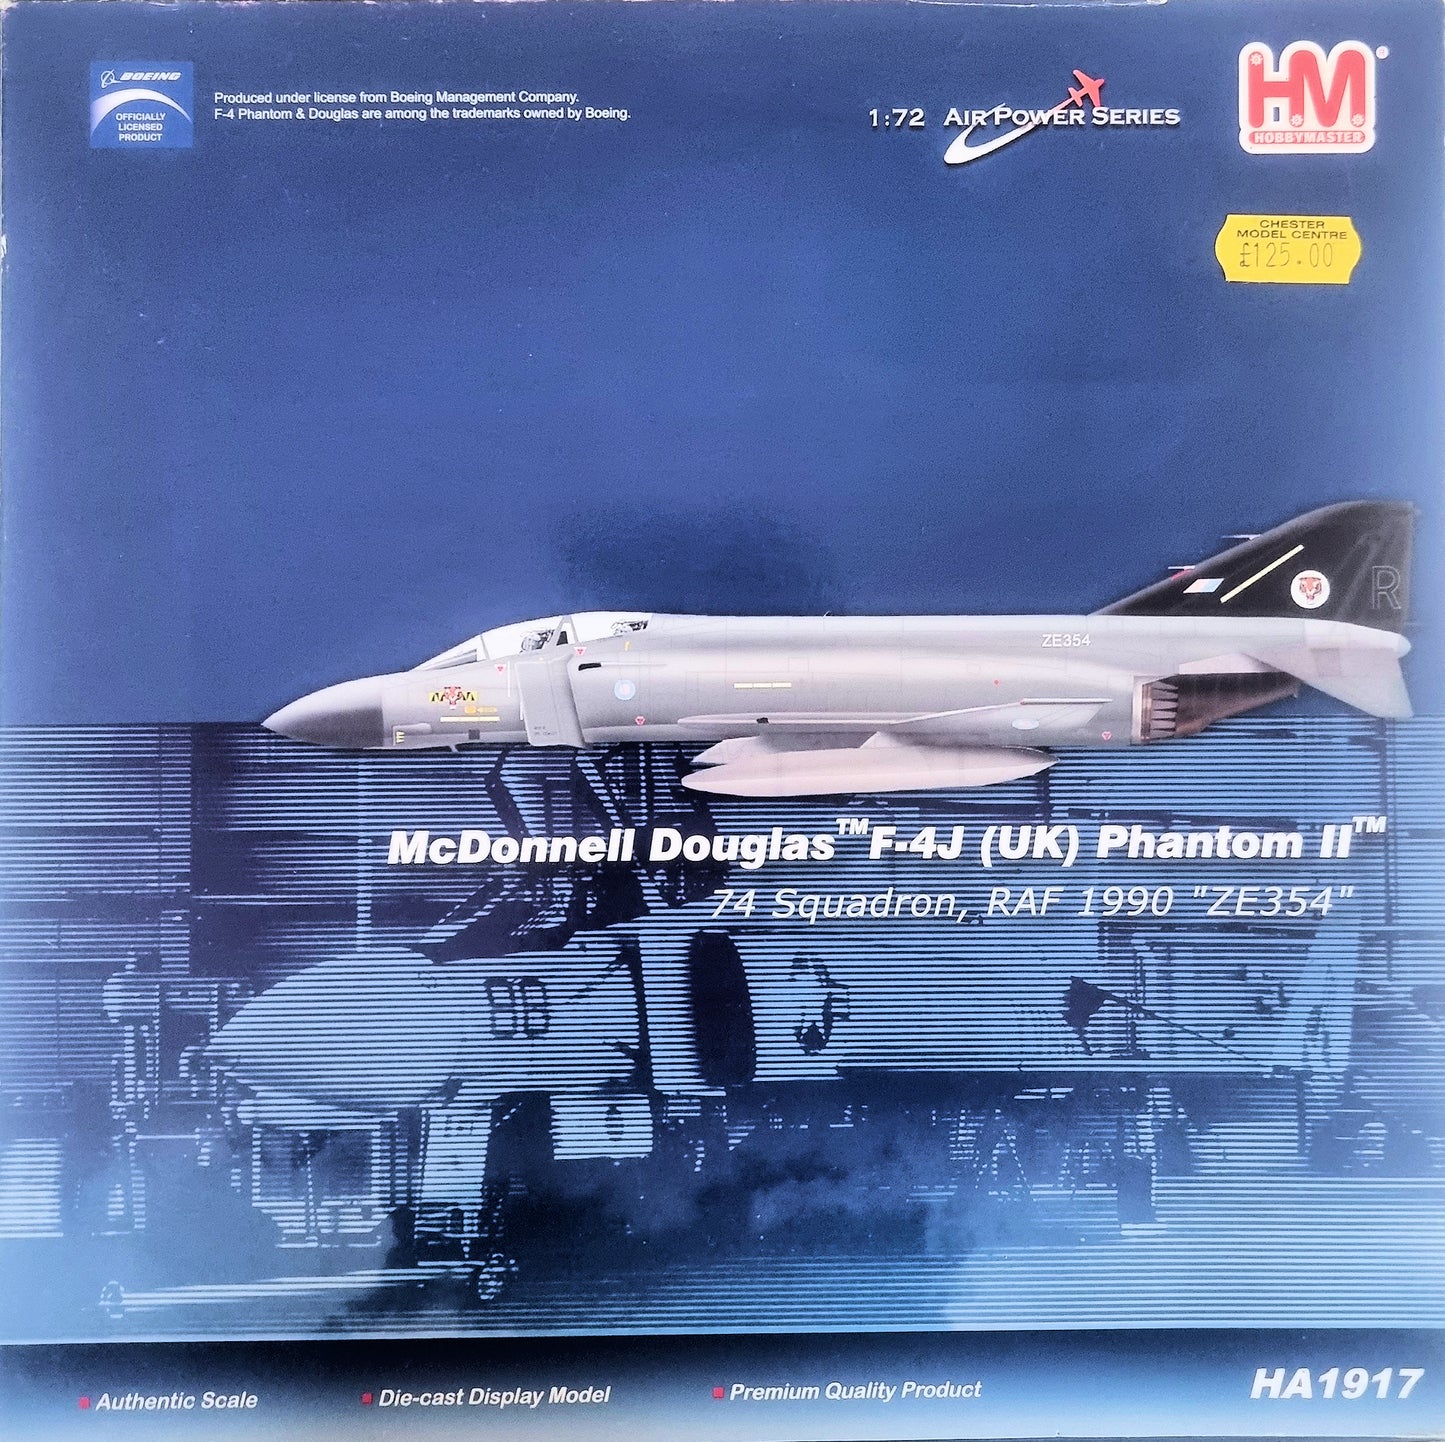 Hobbymaster 1:72 Air Power Series McDonnell Douglas F-4J (UK) Phantom II HA1917 - Chester Model Centre